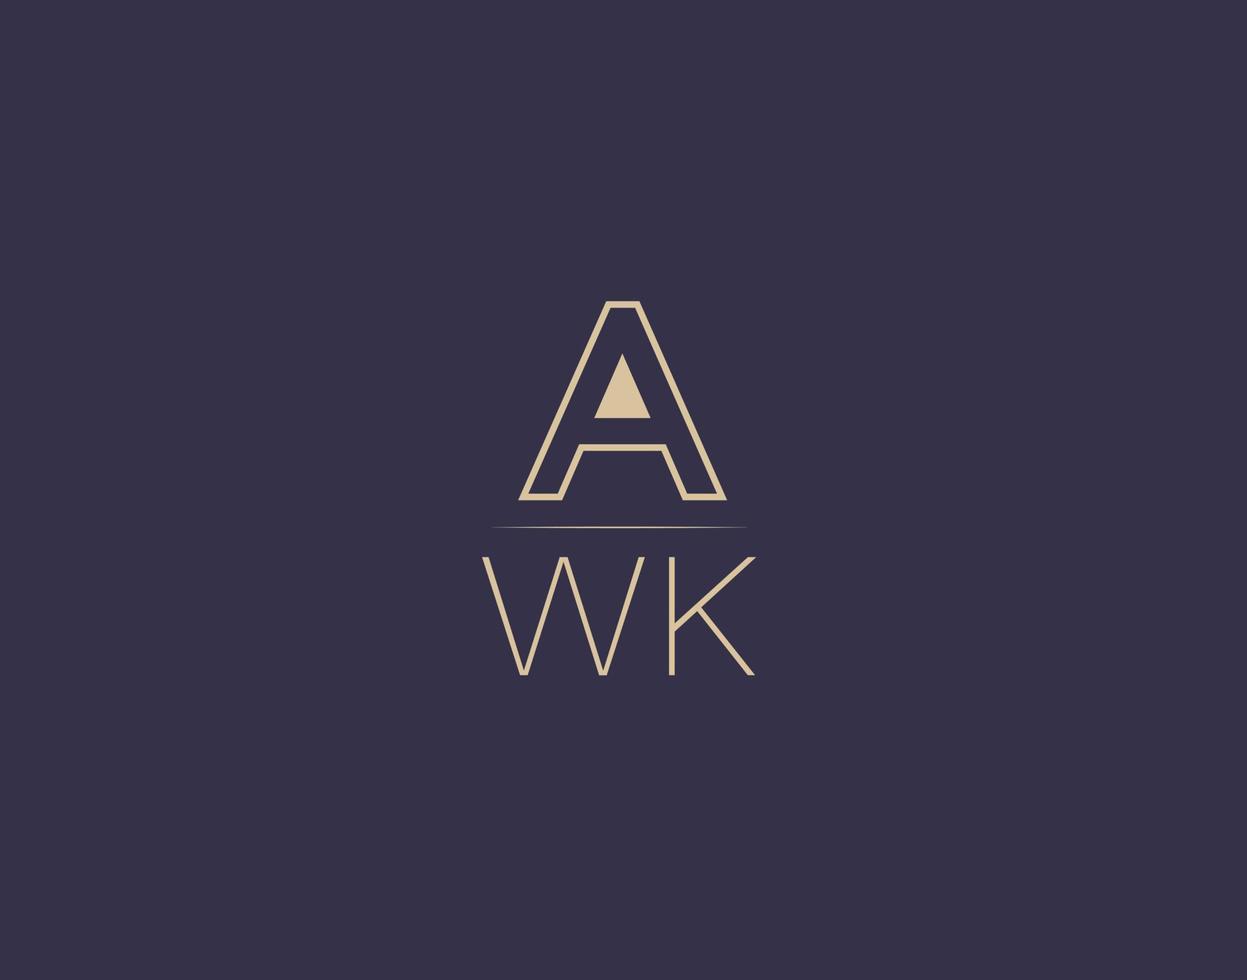 awk letter logo design moderne minimalistische vektorbilder vektor